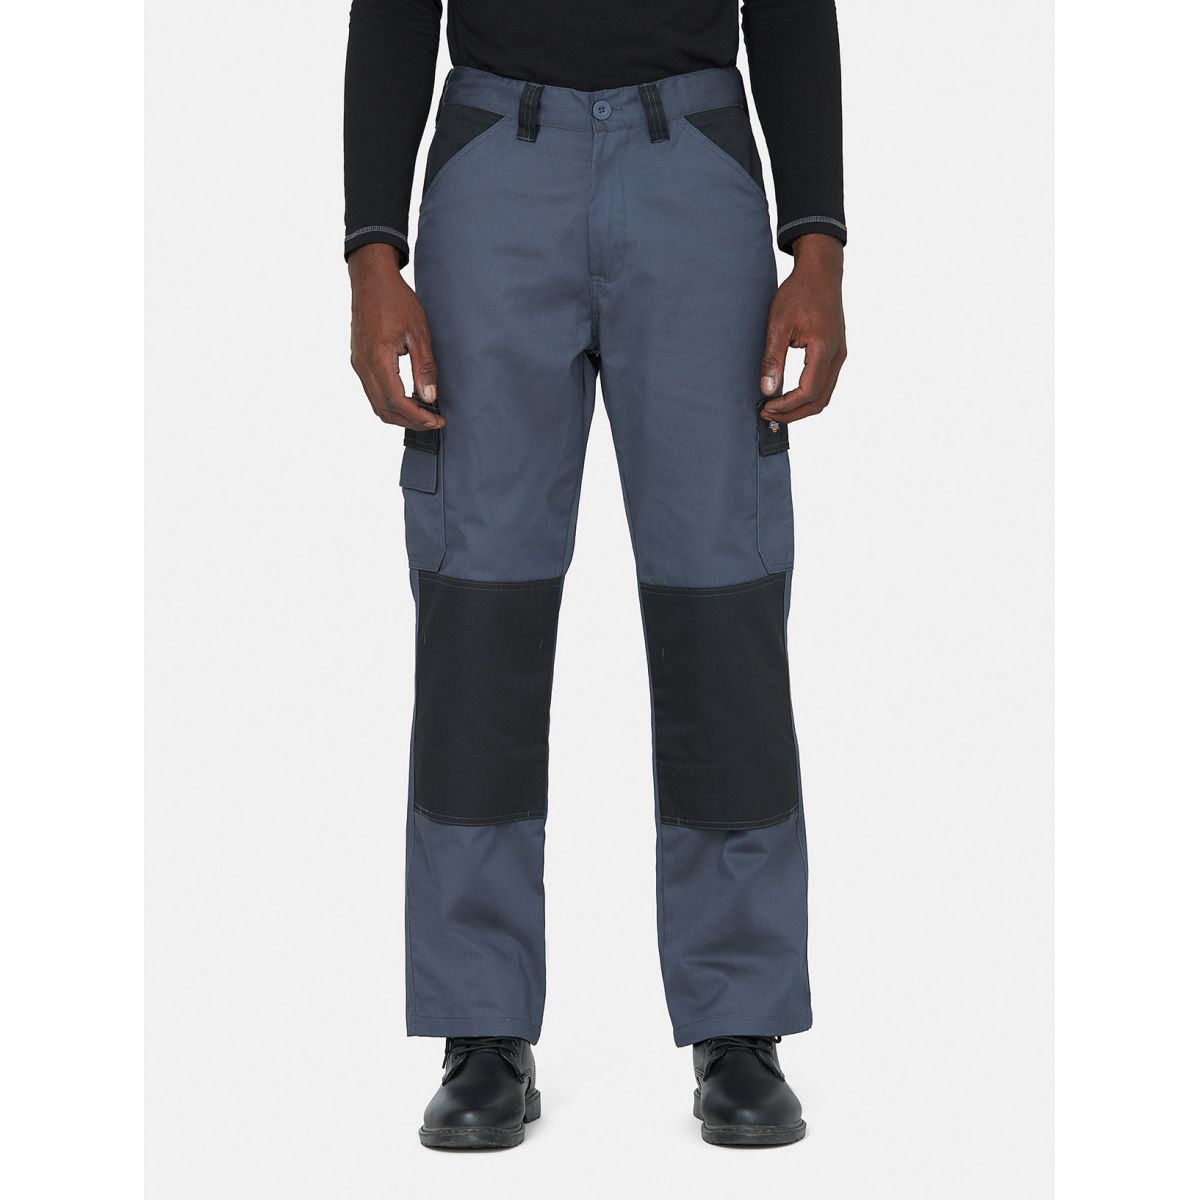 Pantalon Everyday Gris et noir- Dickies - Taille 48 0